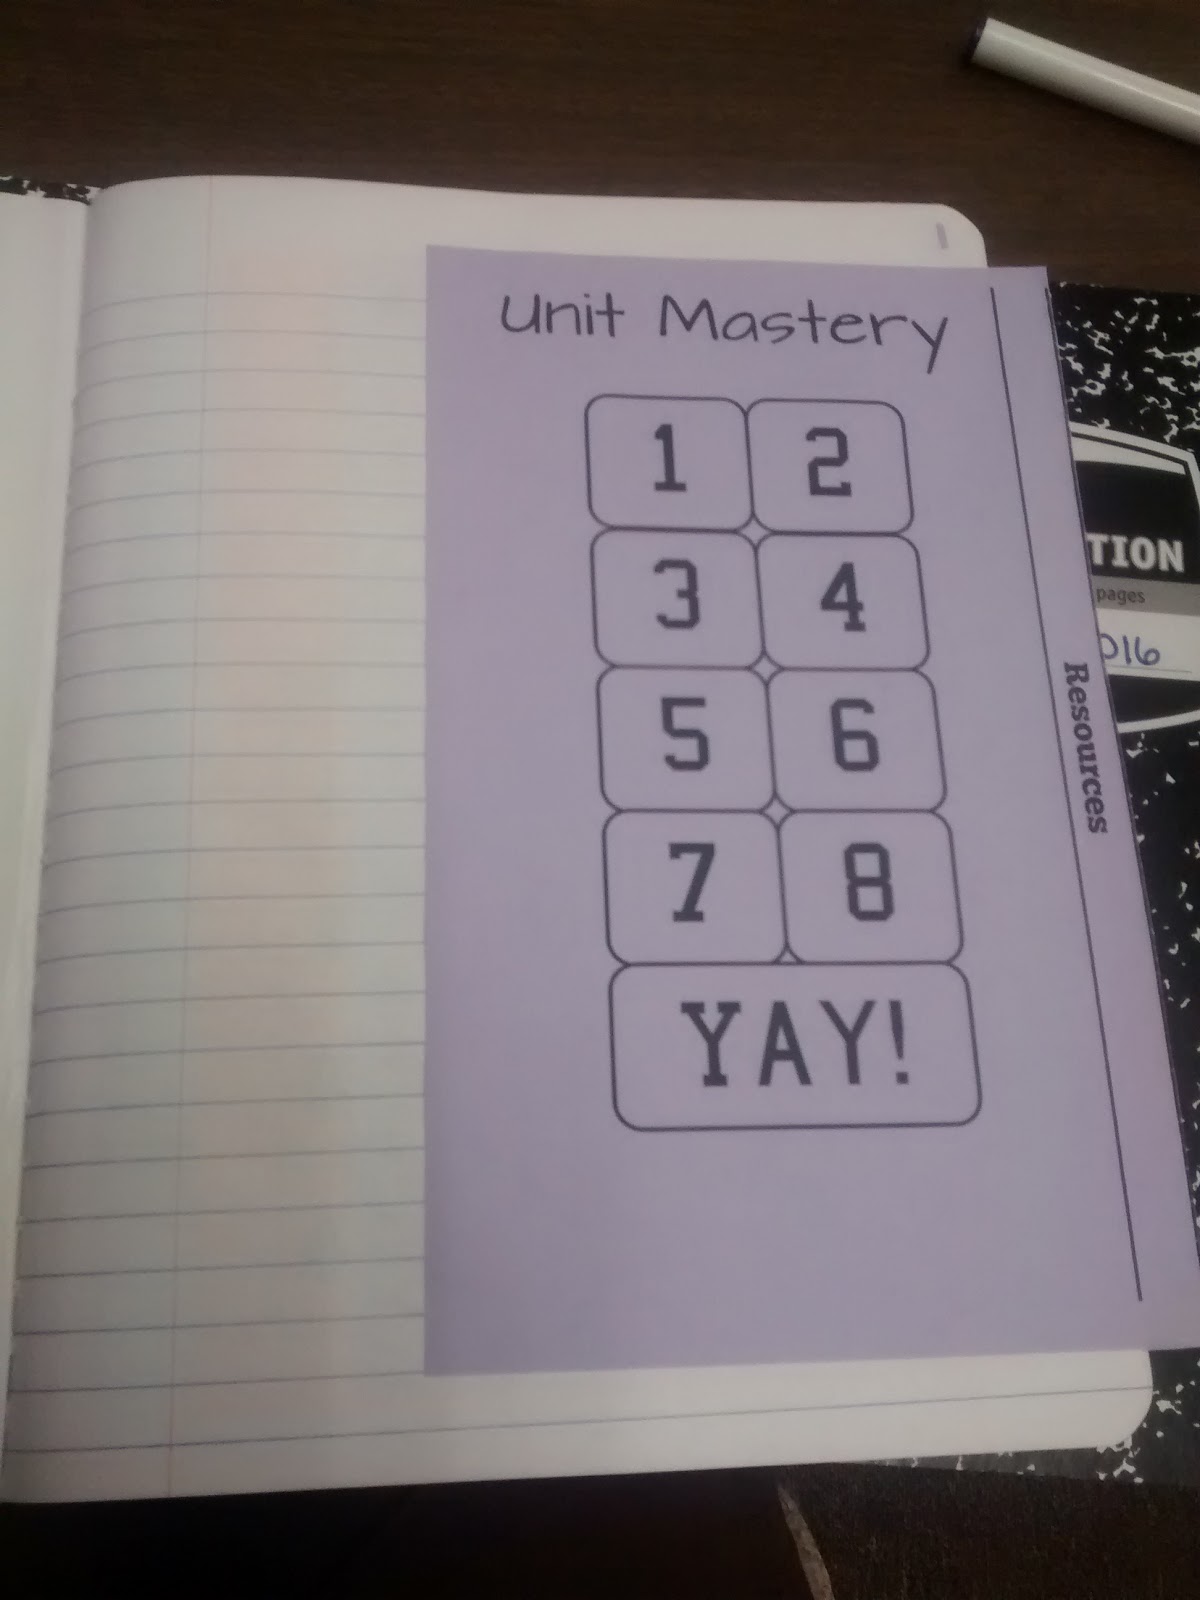 math homework notebook